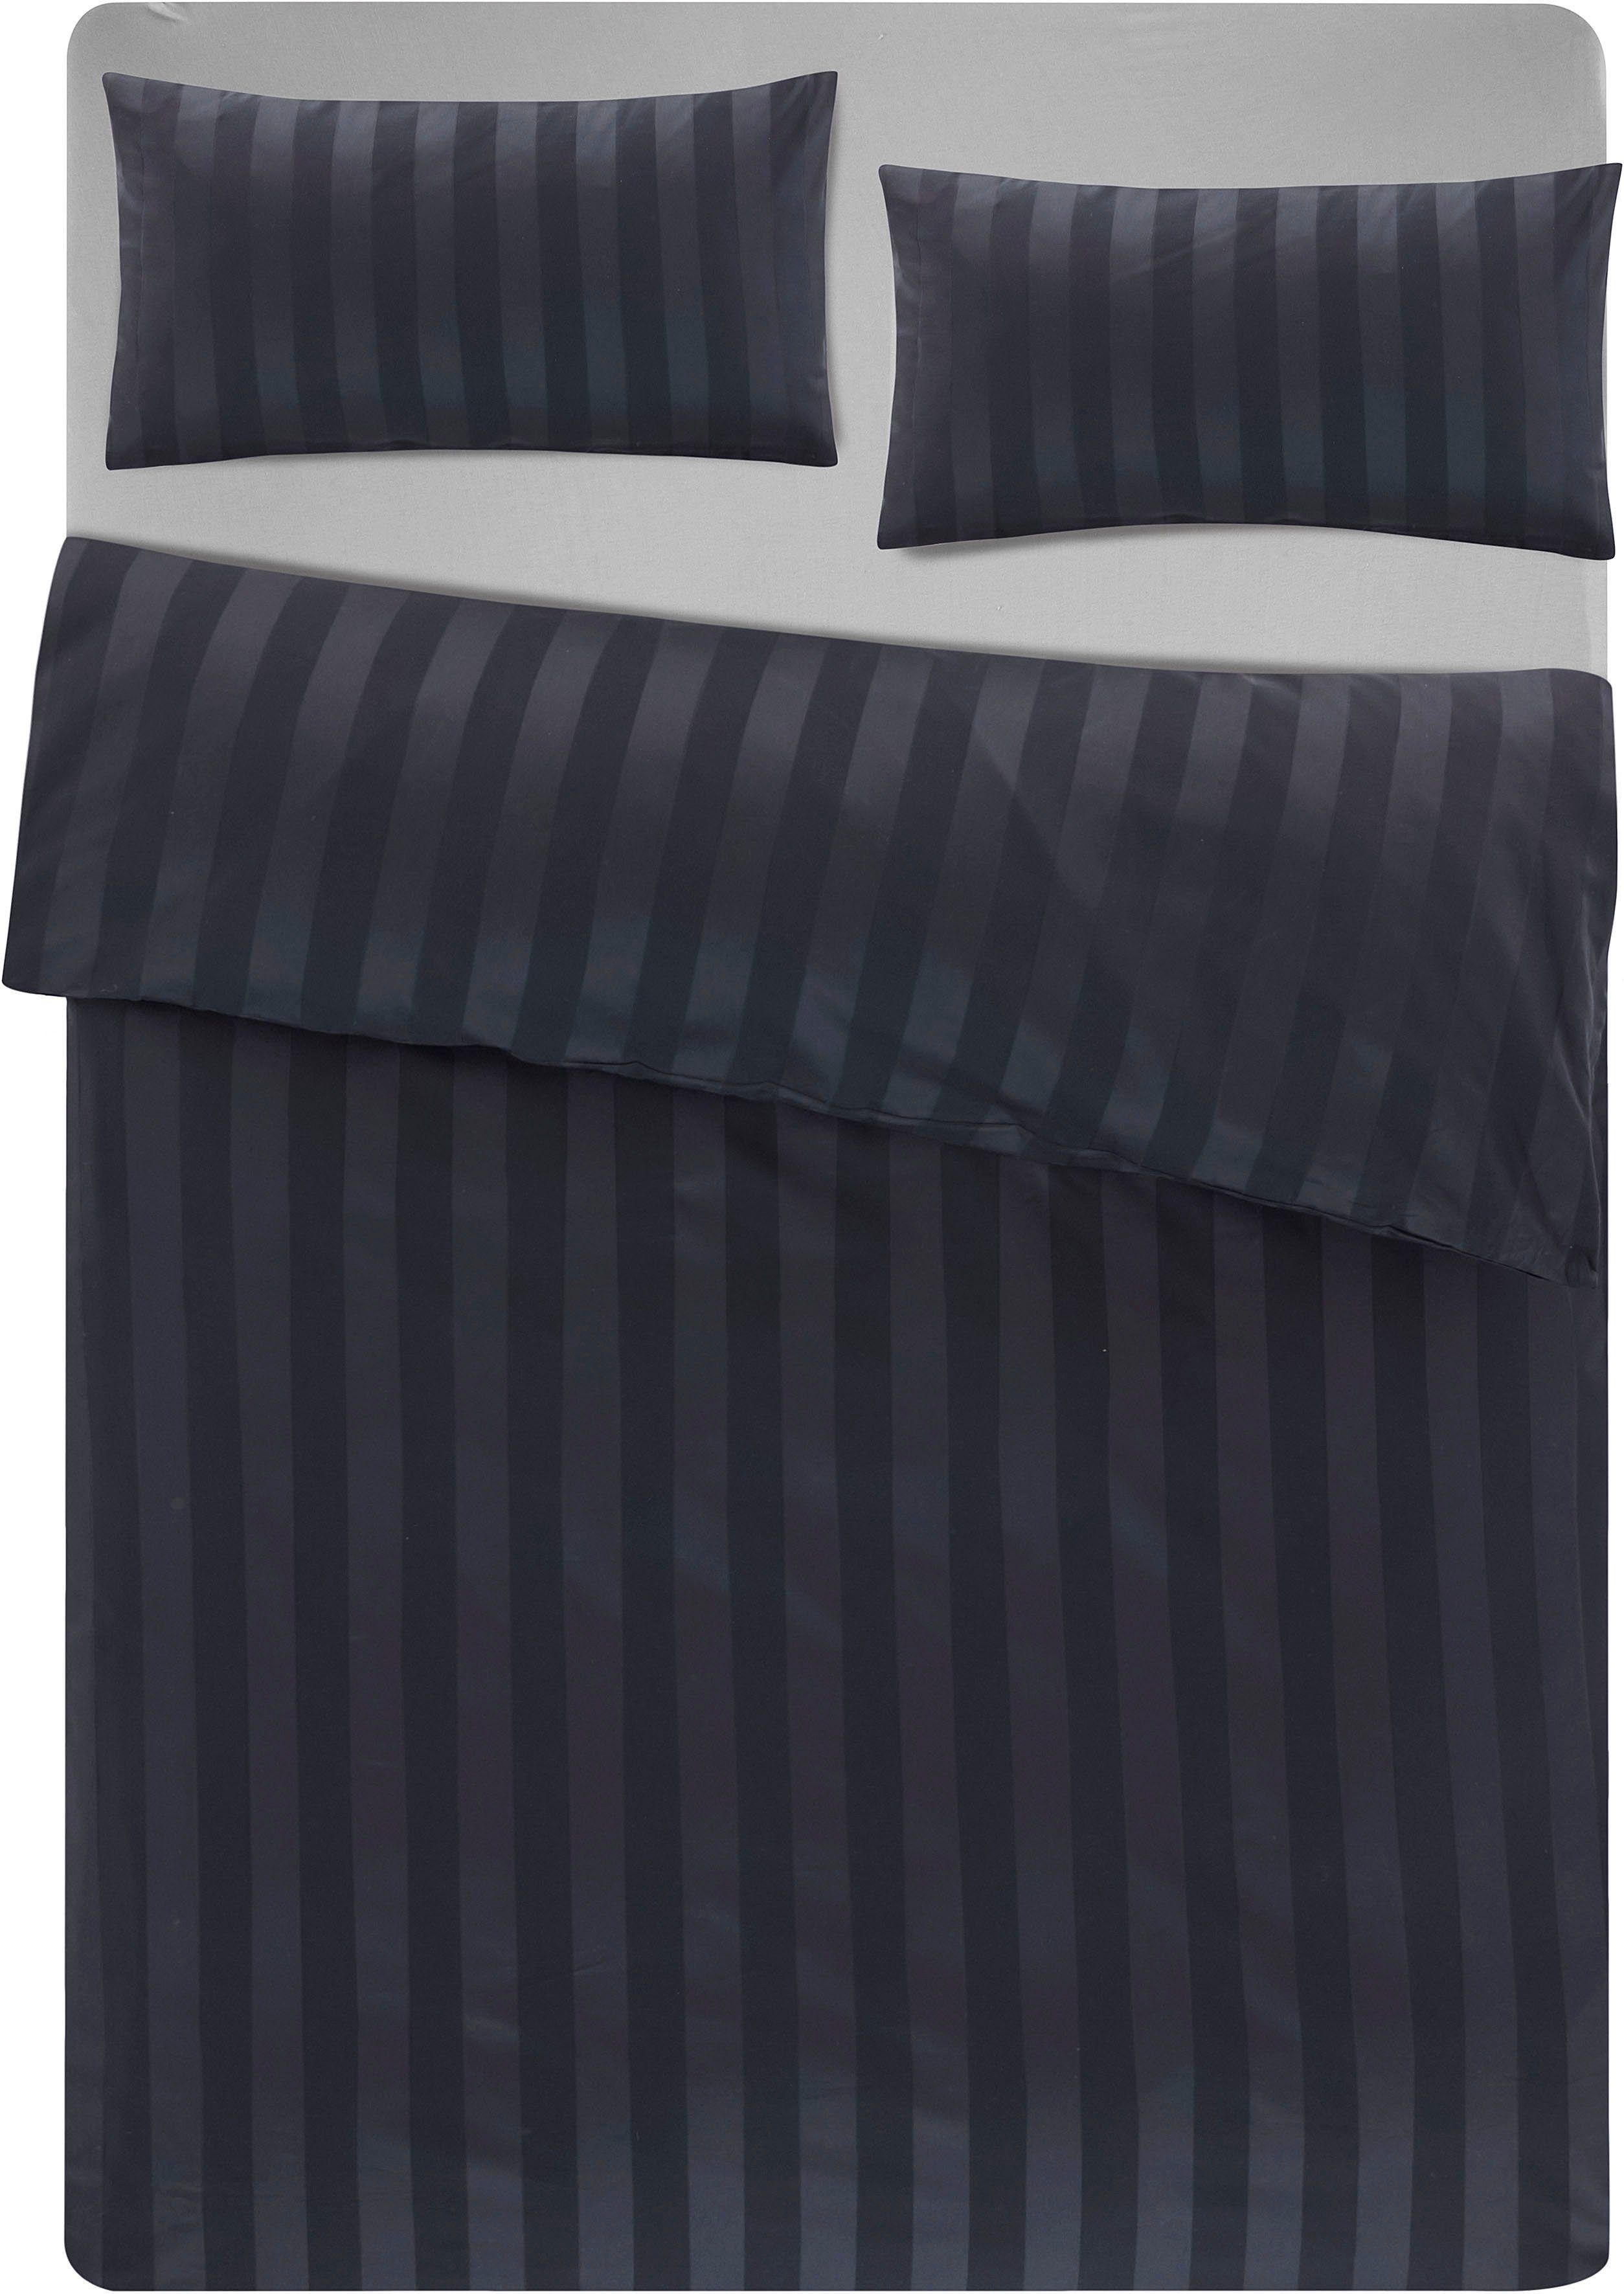 Bettwäsche Malia in Gr. Satin-Qualität Baumwolle, 135x200 Bettwäsche cm, schwarz 155x220 zeitlose Bettwäsche 2 teilig, Satin, aus in oder Leonique